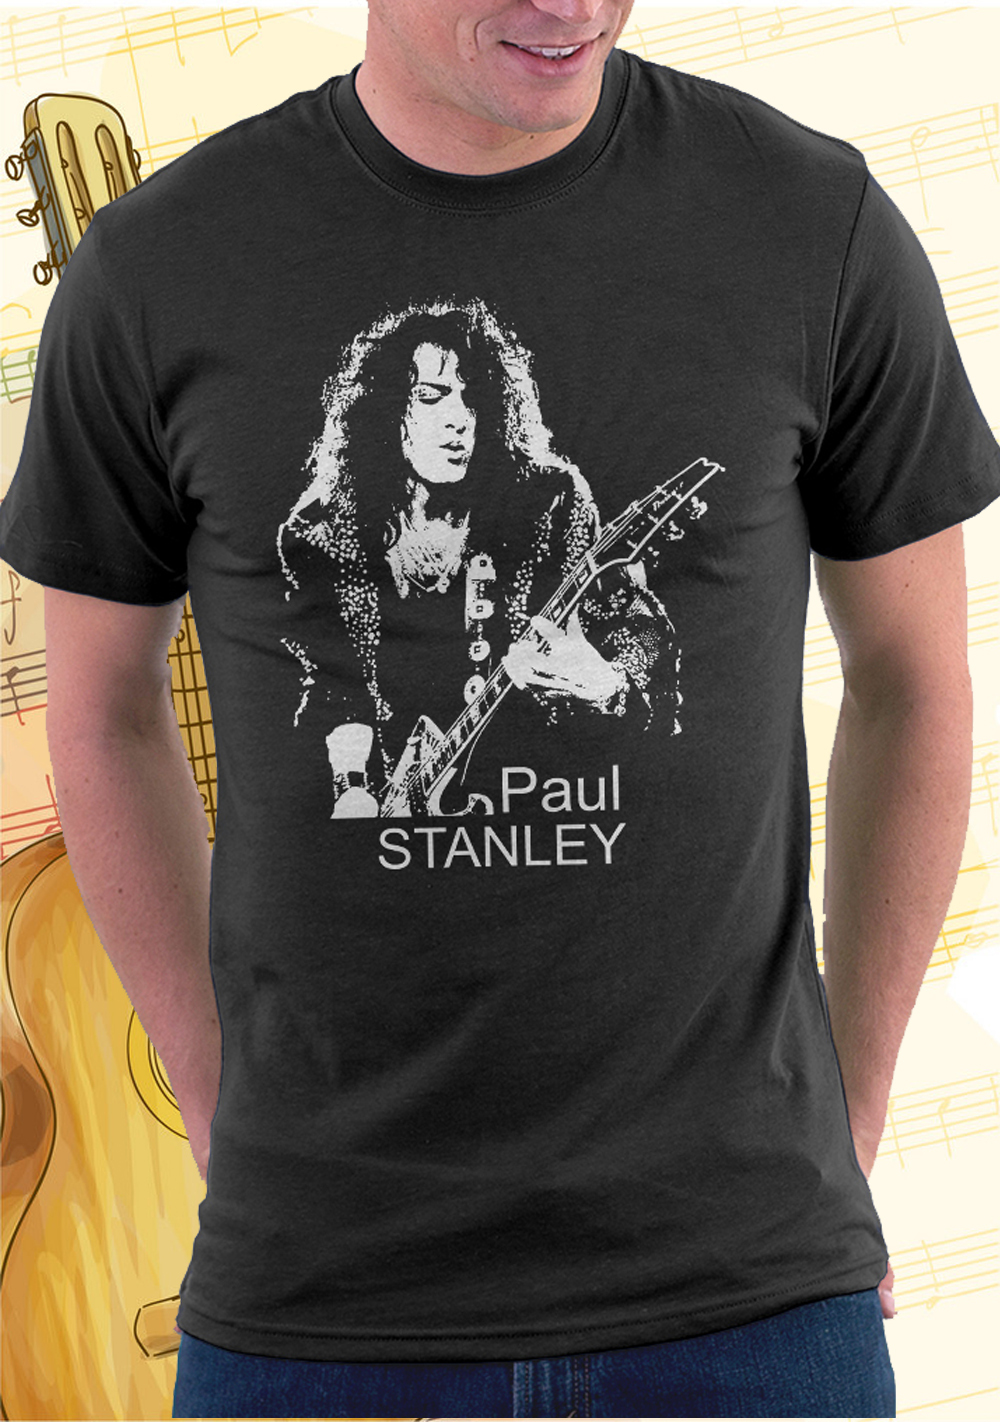 KISS Rock Band Graphic T-shirt Paul Stanley Unisex Adult Men's Women's ...